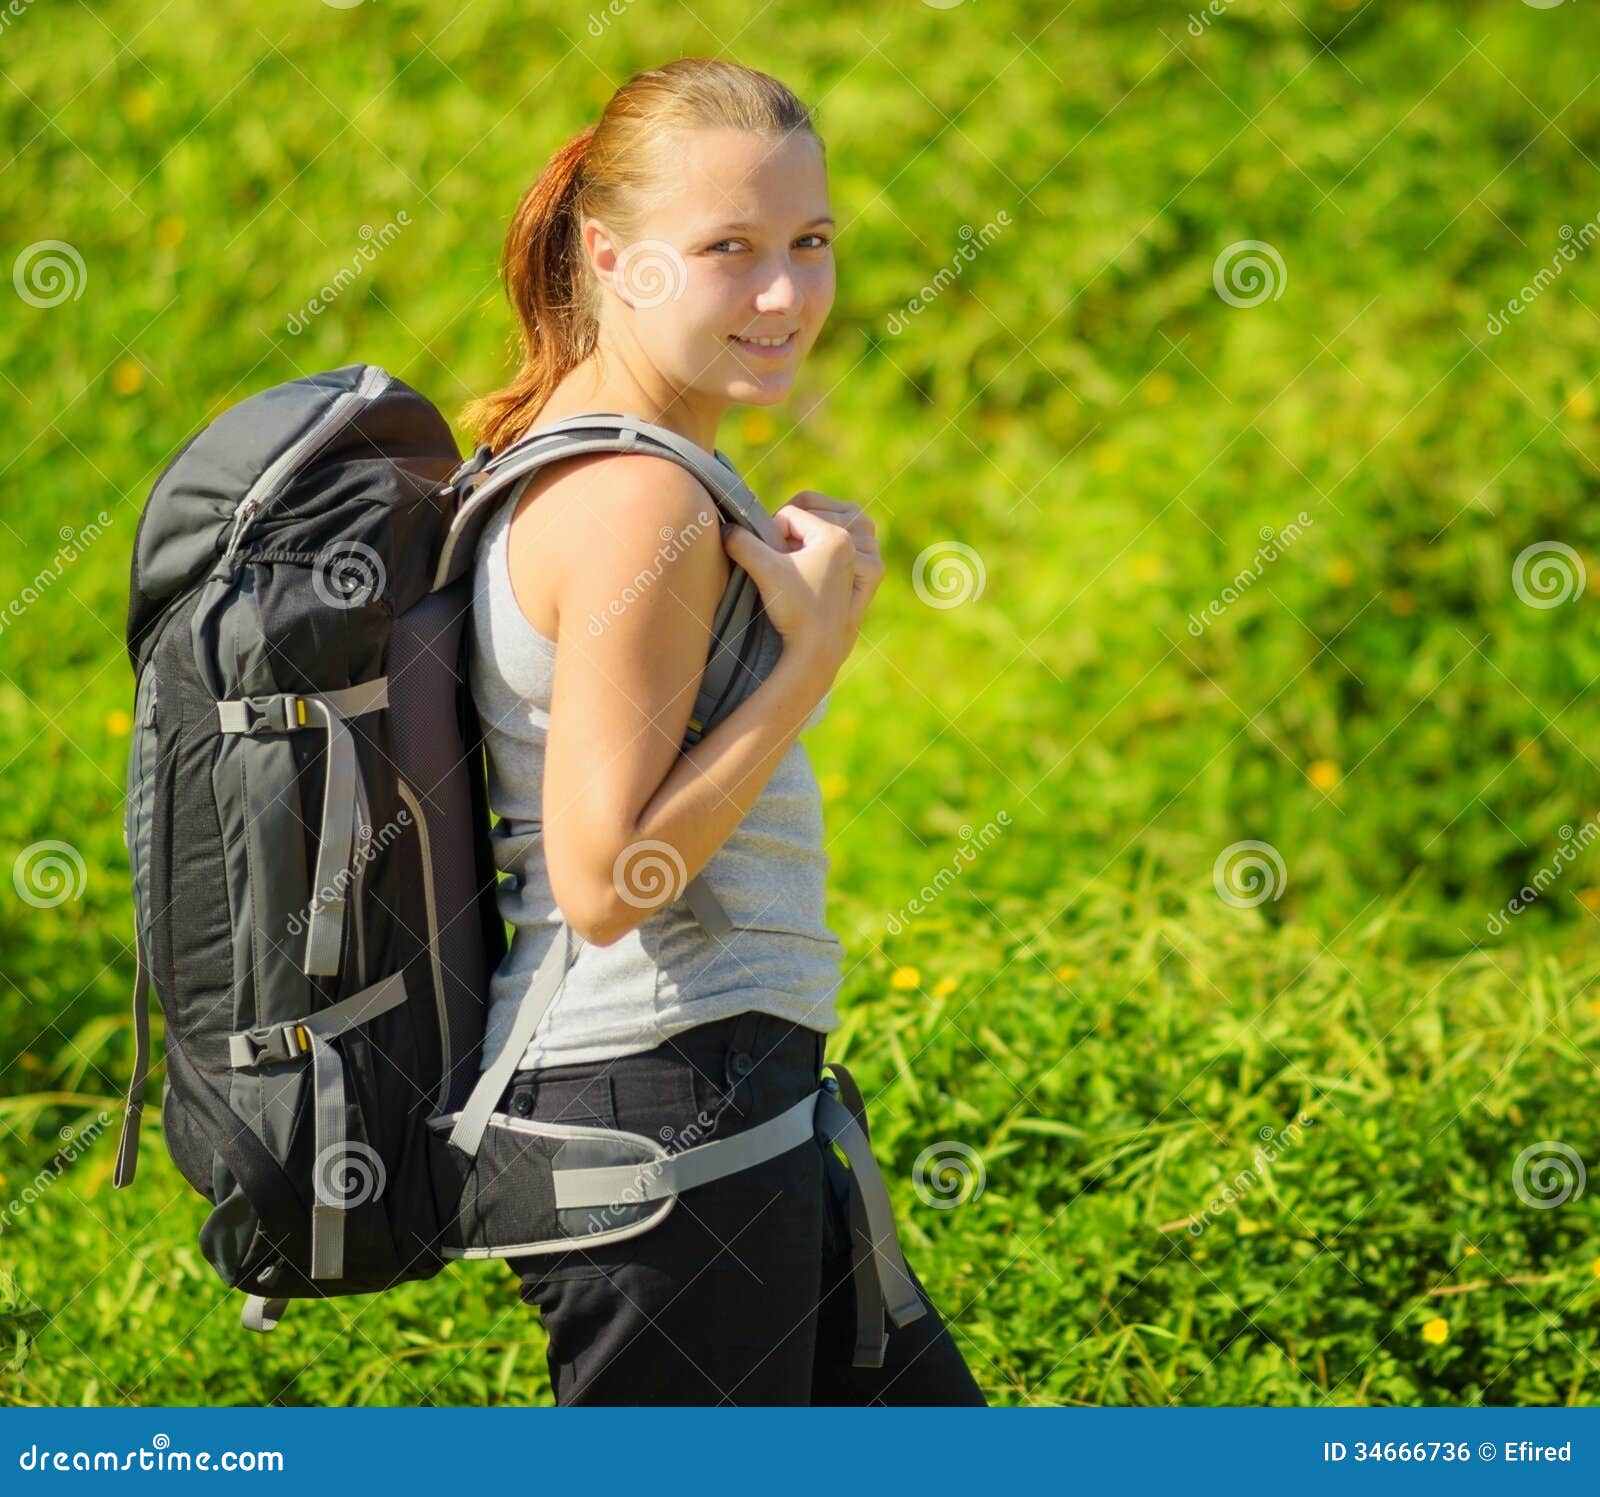 ladies hiking rucksack